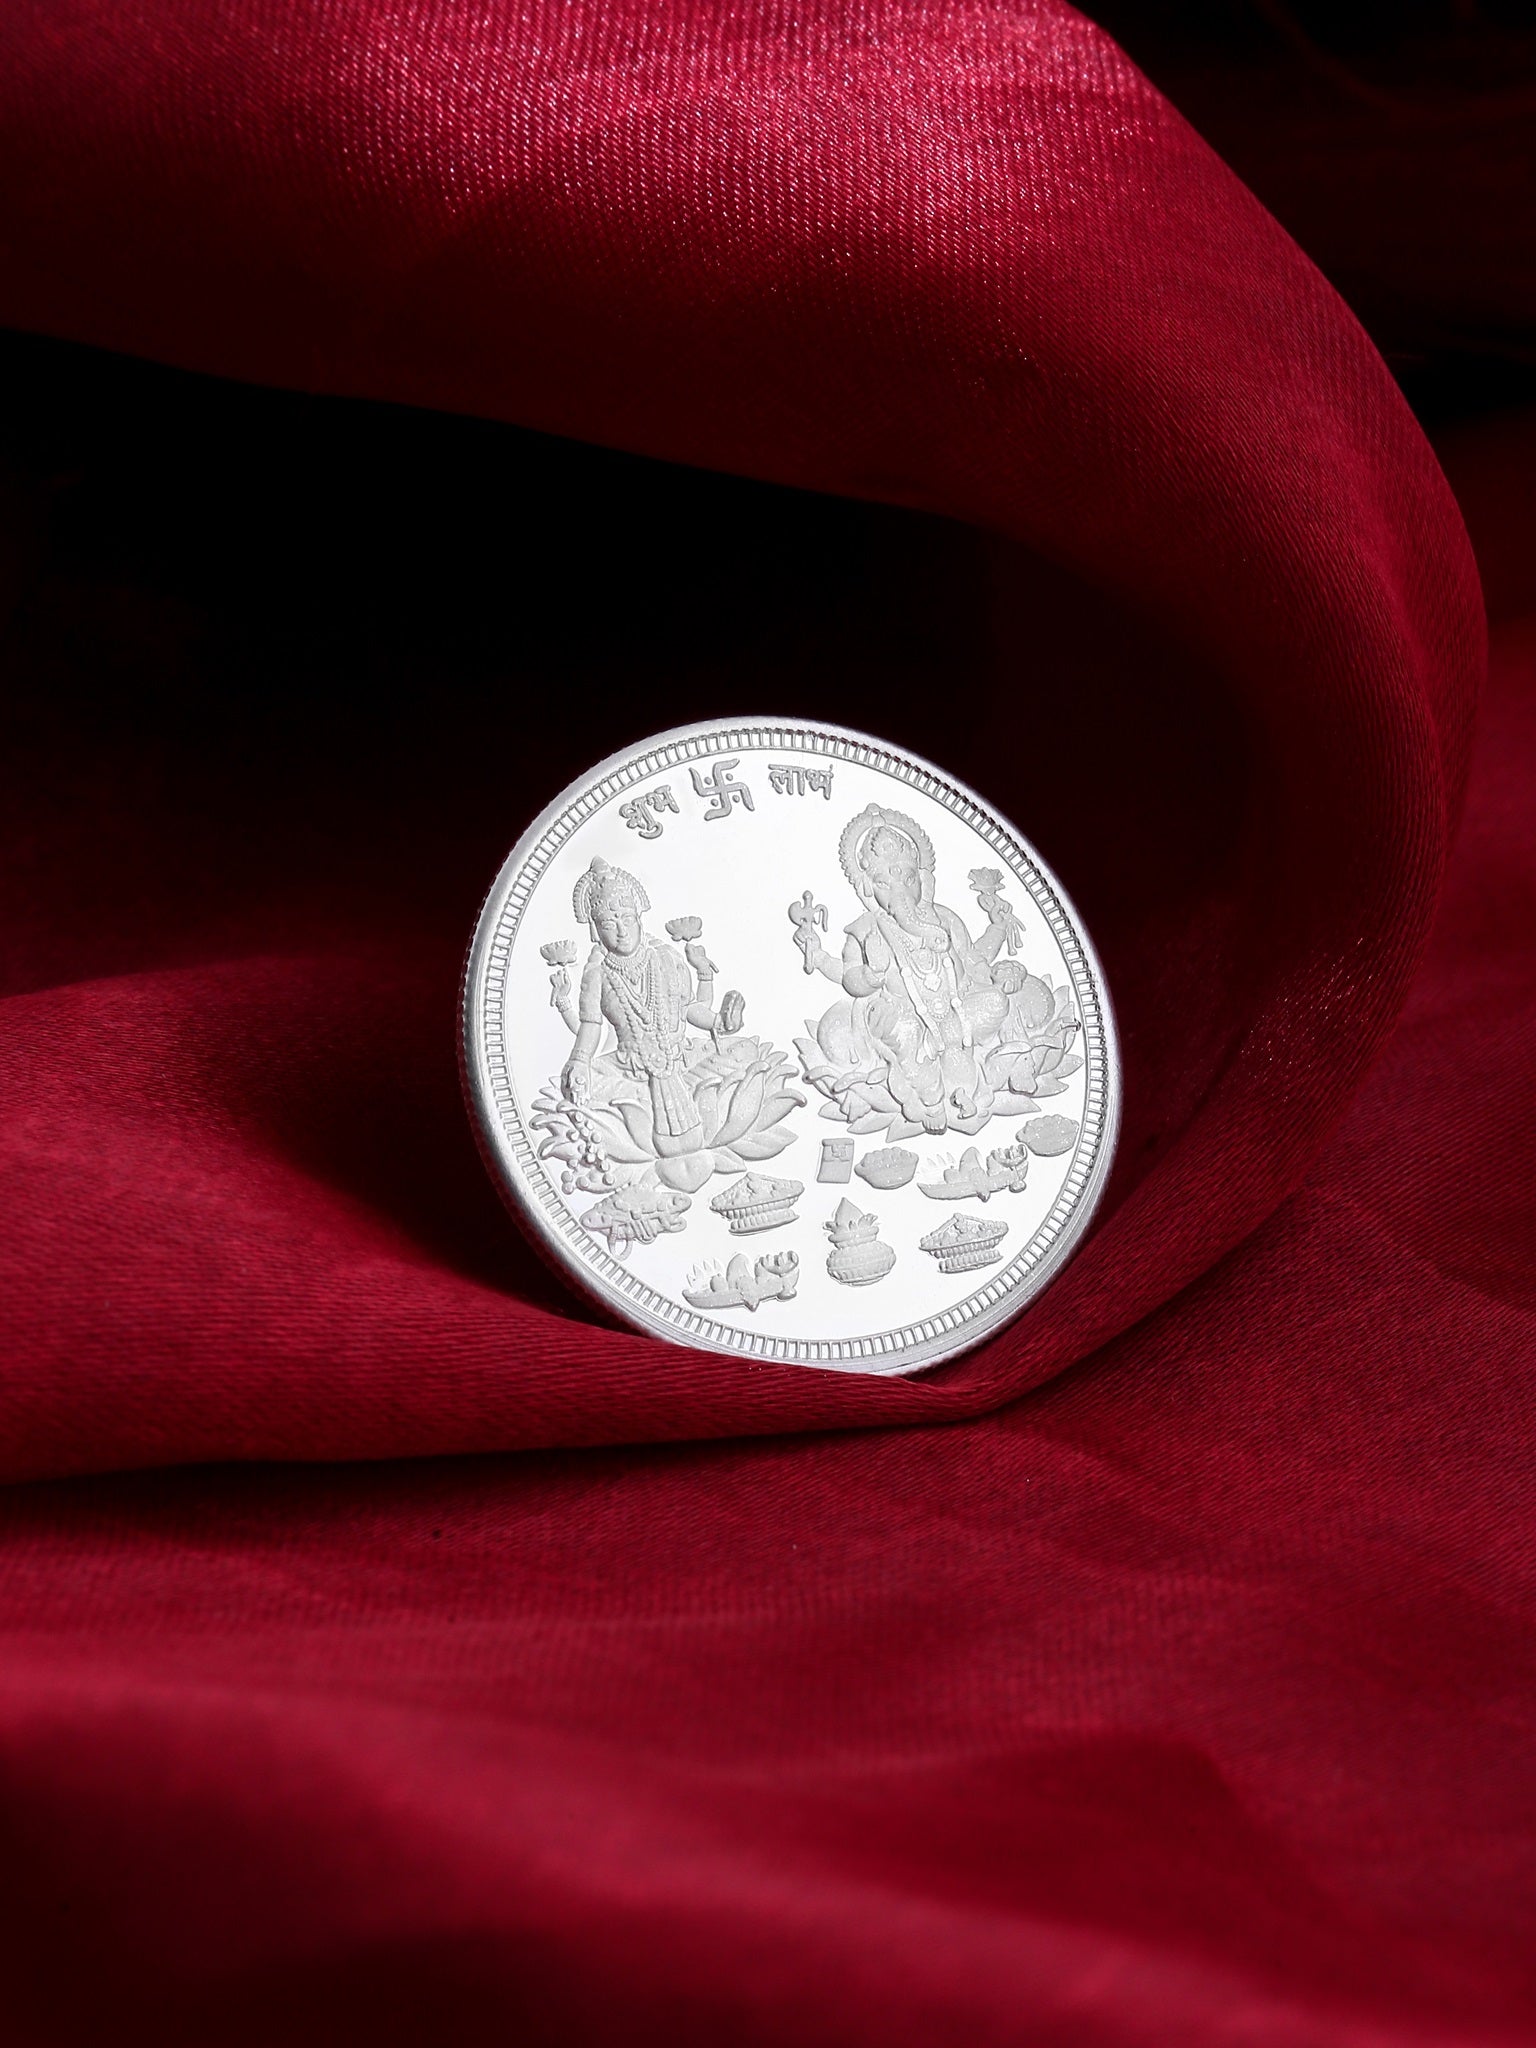 10g Silver Coin